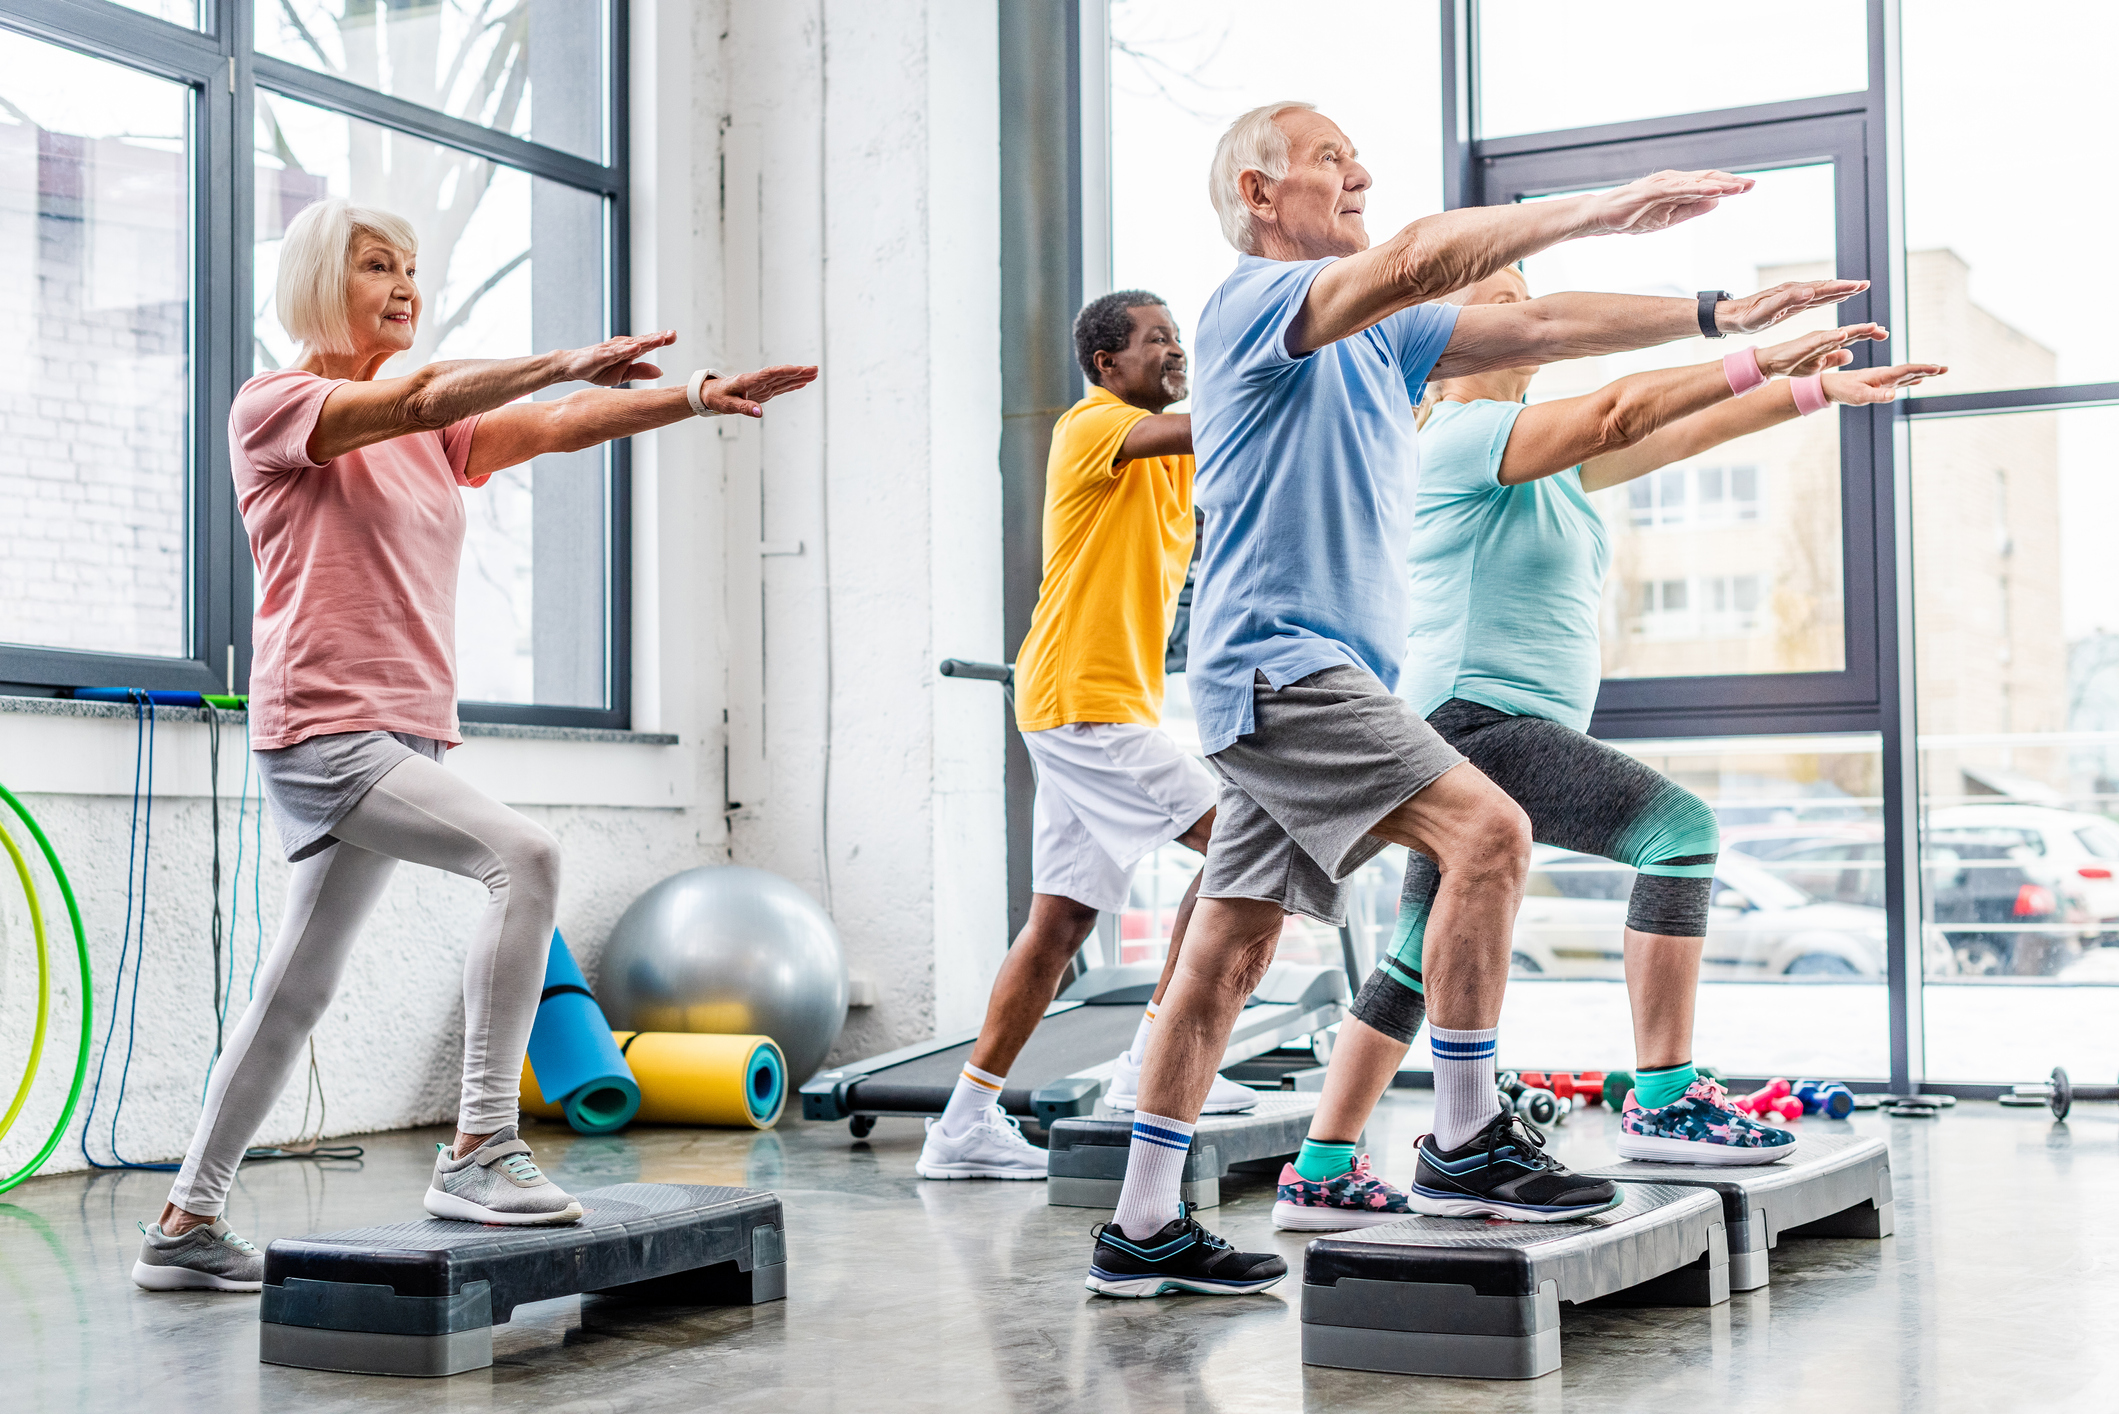 Step people. Занятие спортом. Пожилые люди занимаются спортом. Фитнес для пожилых. Пенсионеры занимаются спортом в зале.